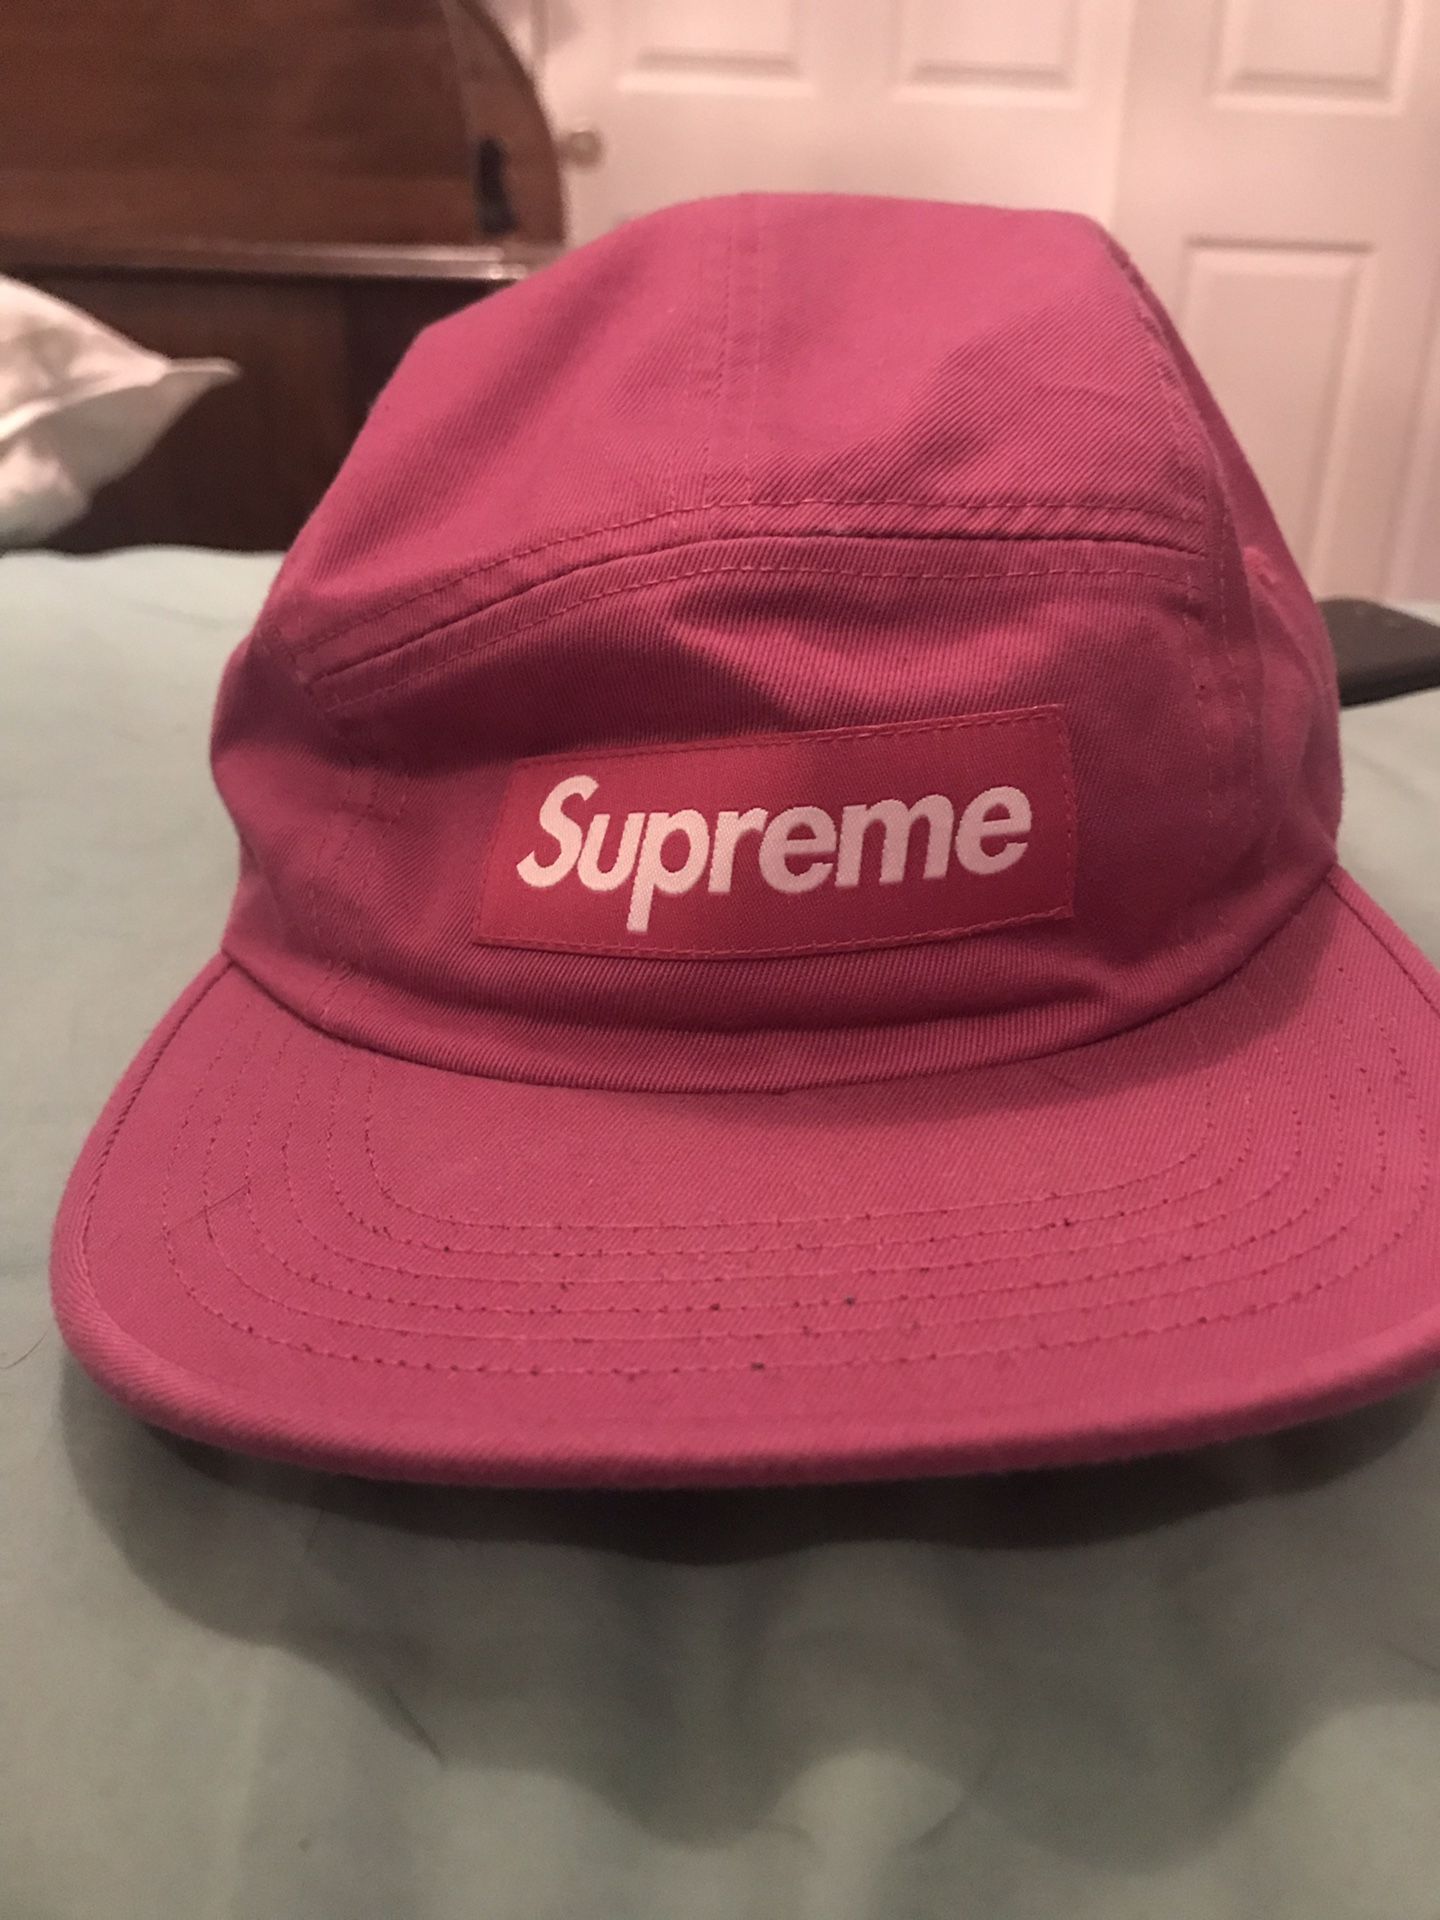 Supreme hats